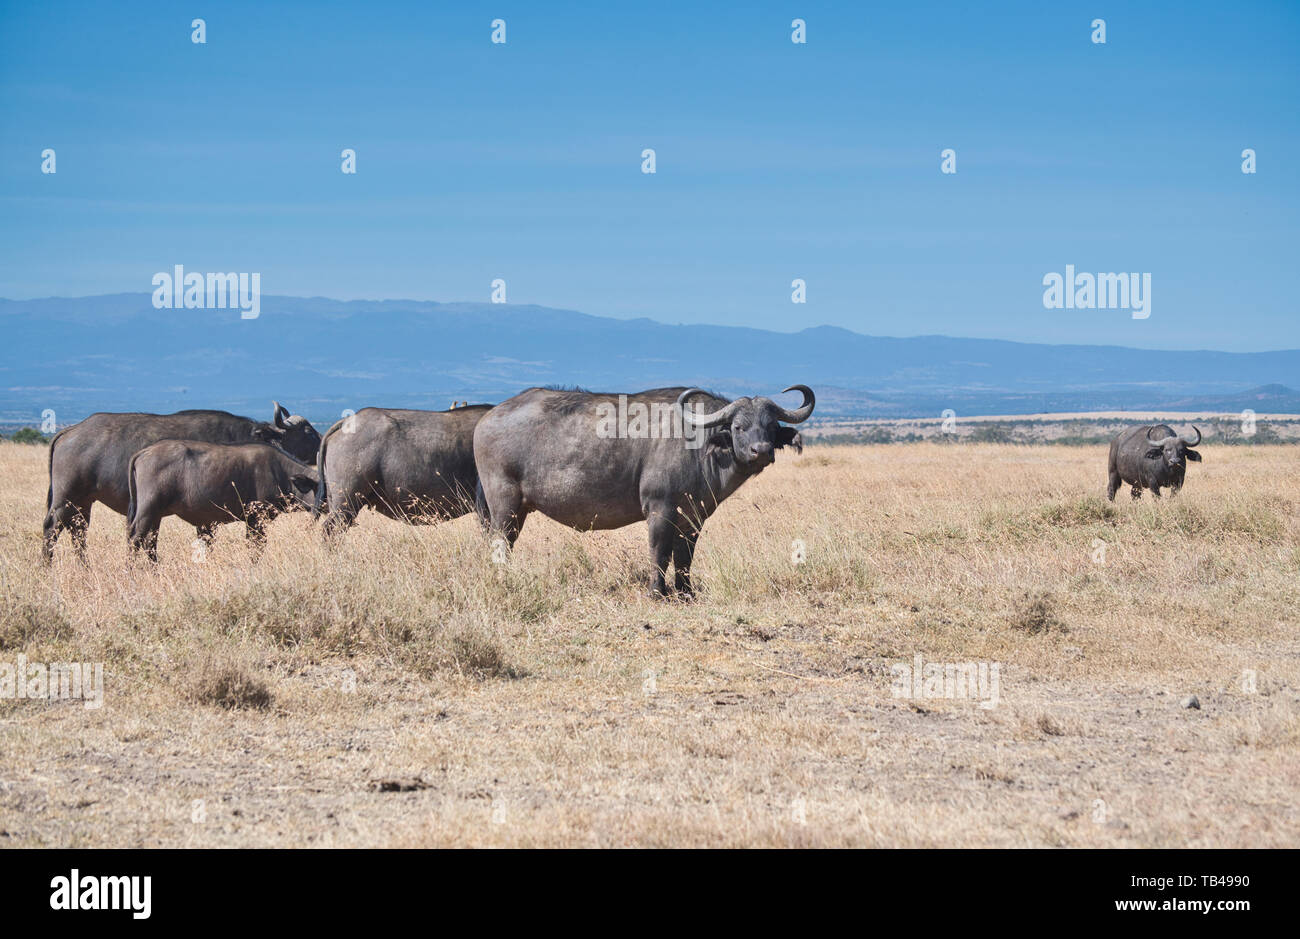 El búfalo africano (Syncerus caffer), parte de un pequeño rebaño Foto de stock